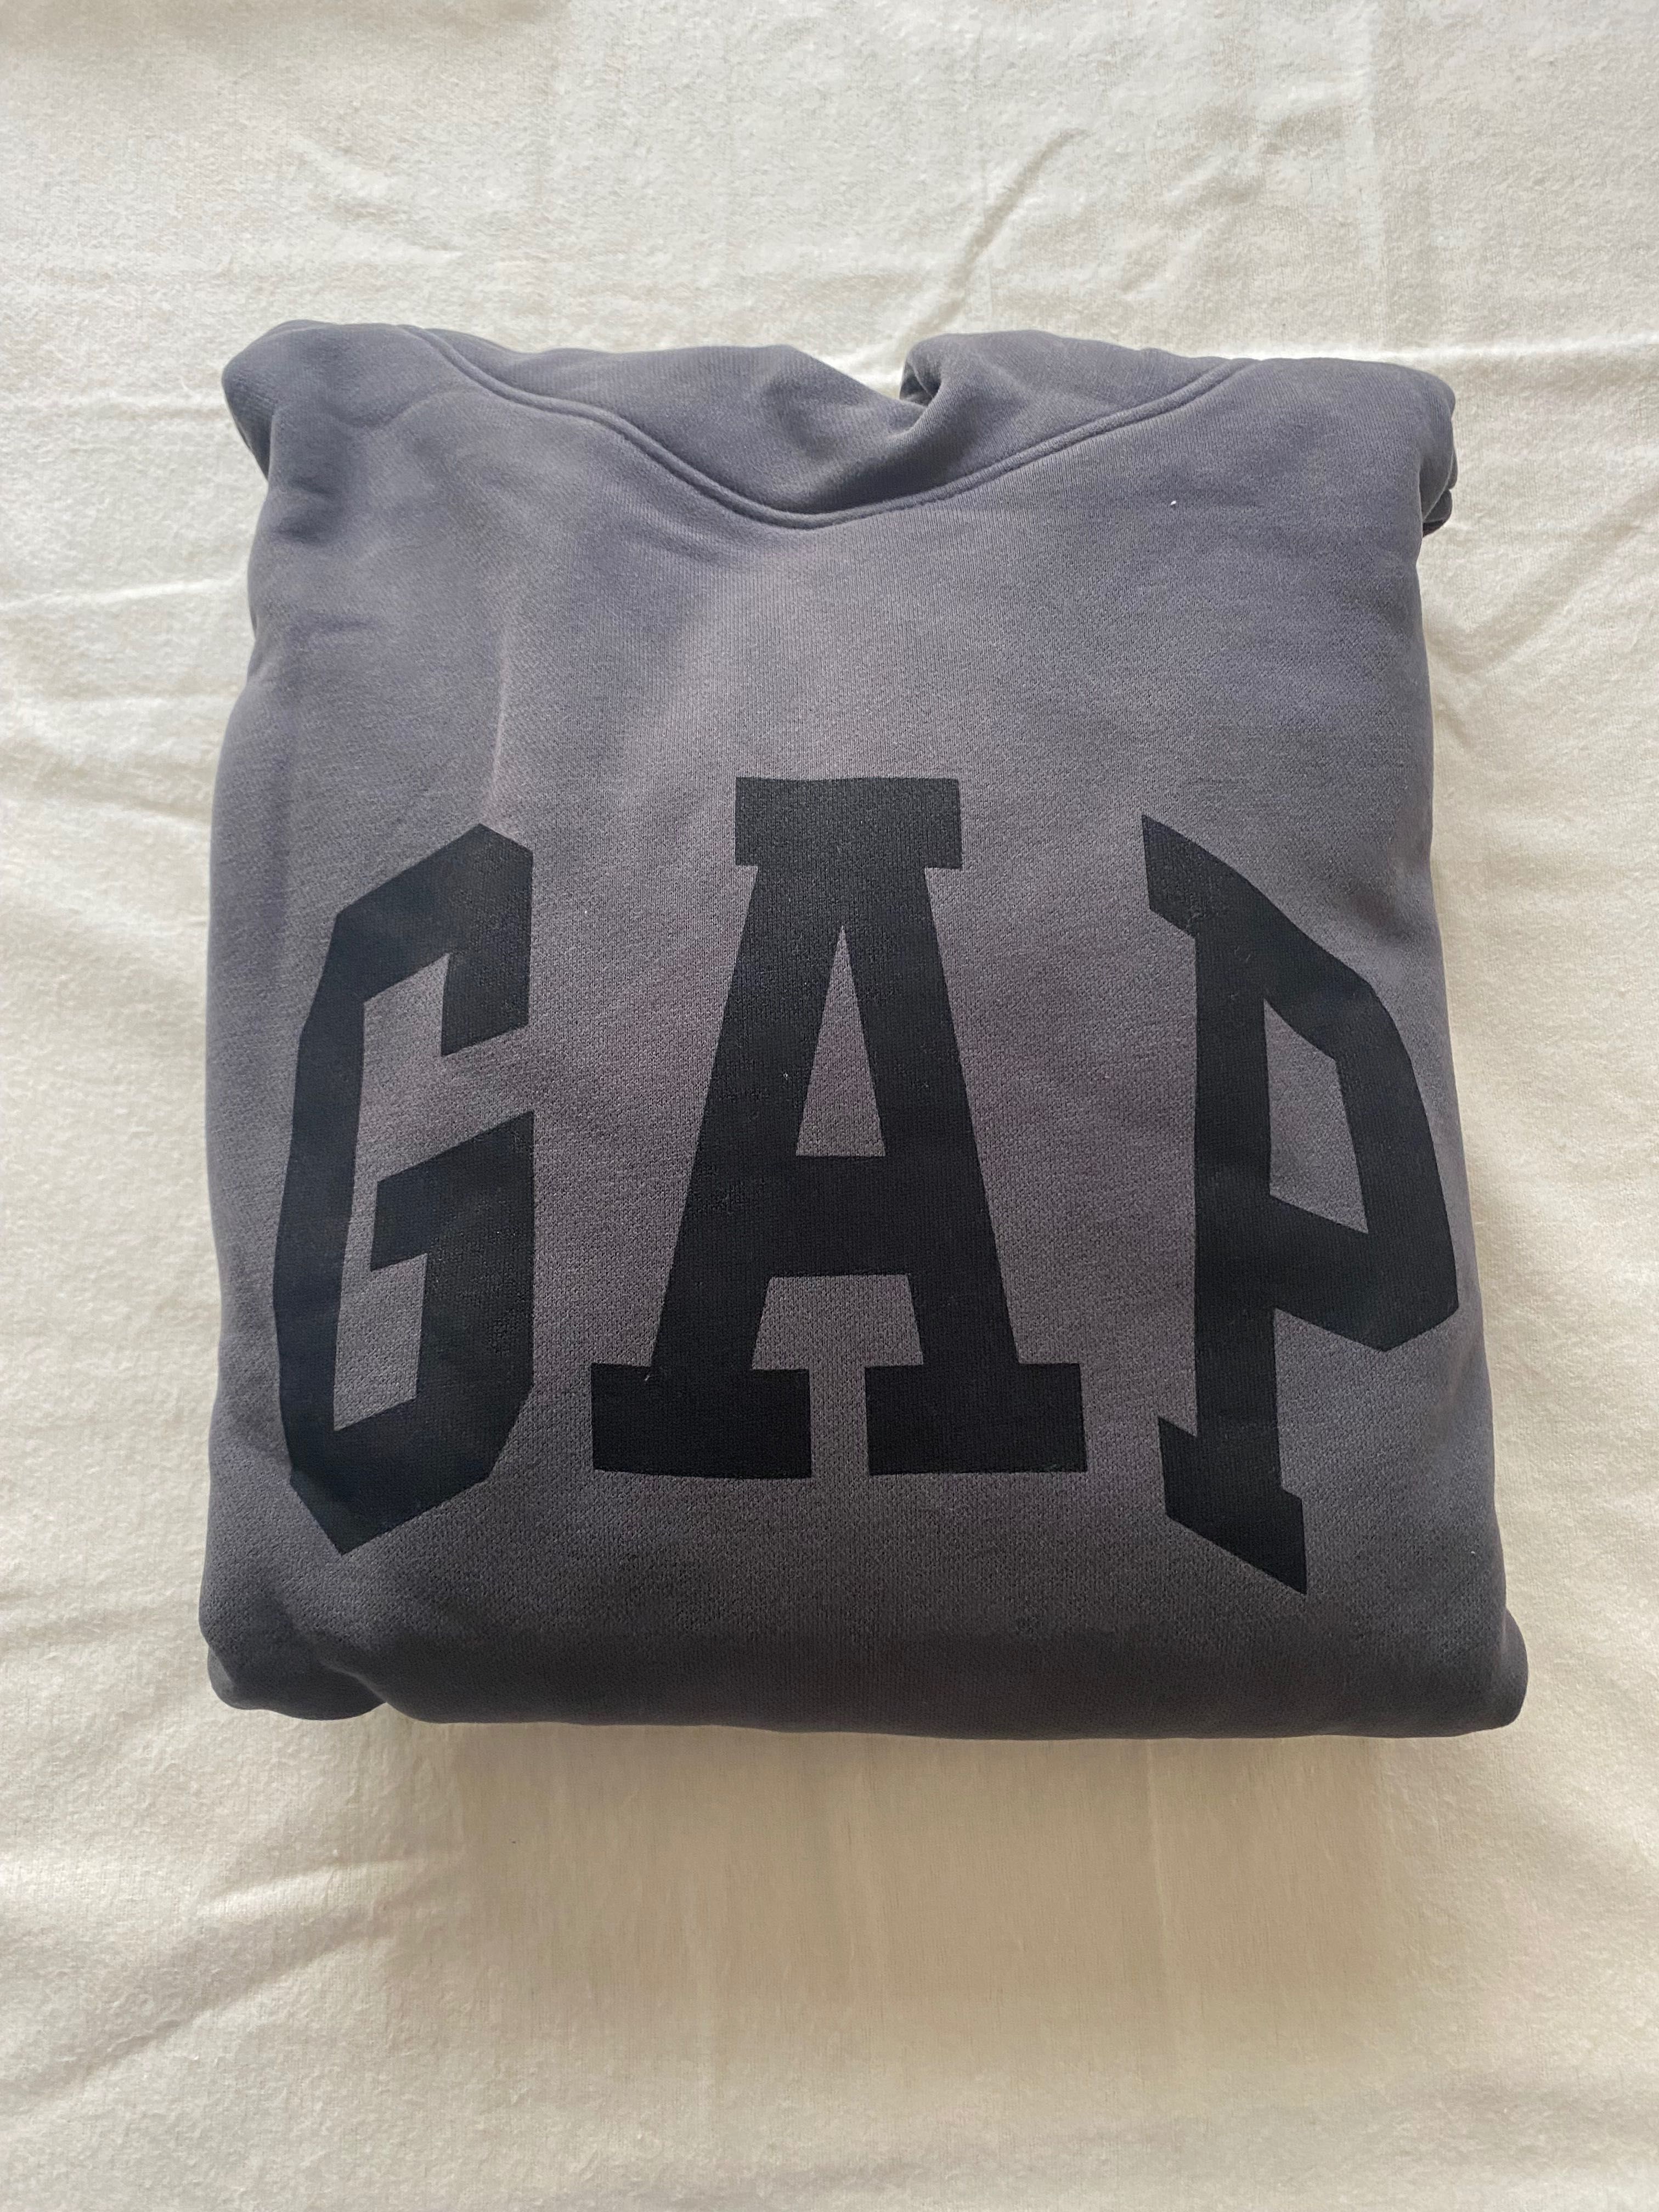 Yeezy X Gap hoodie